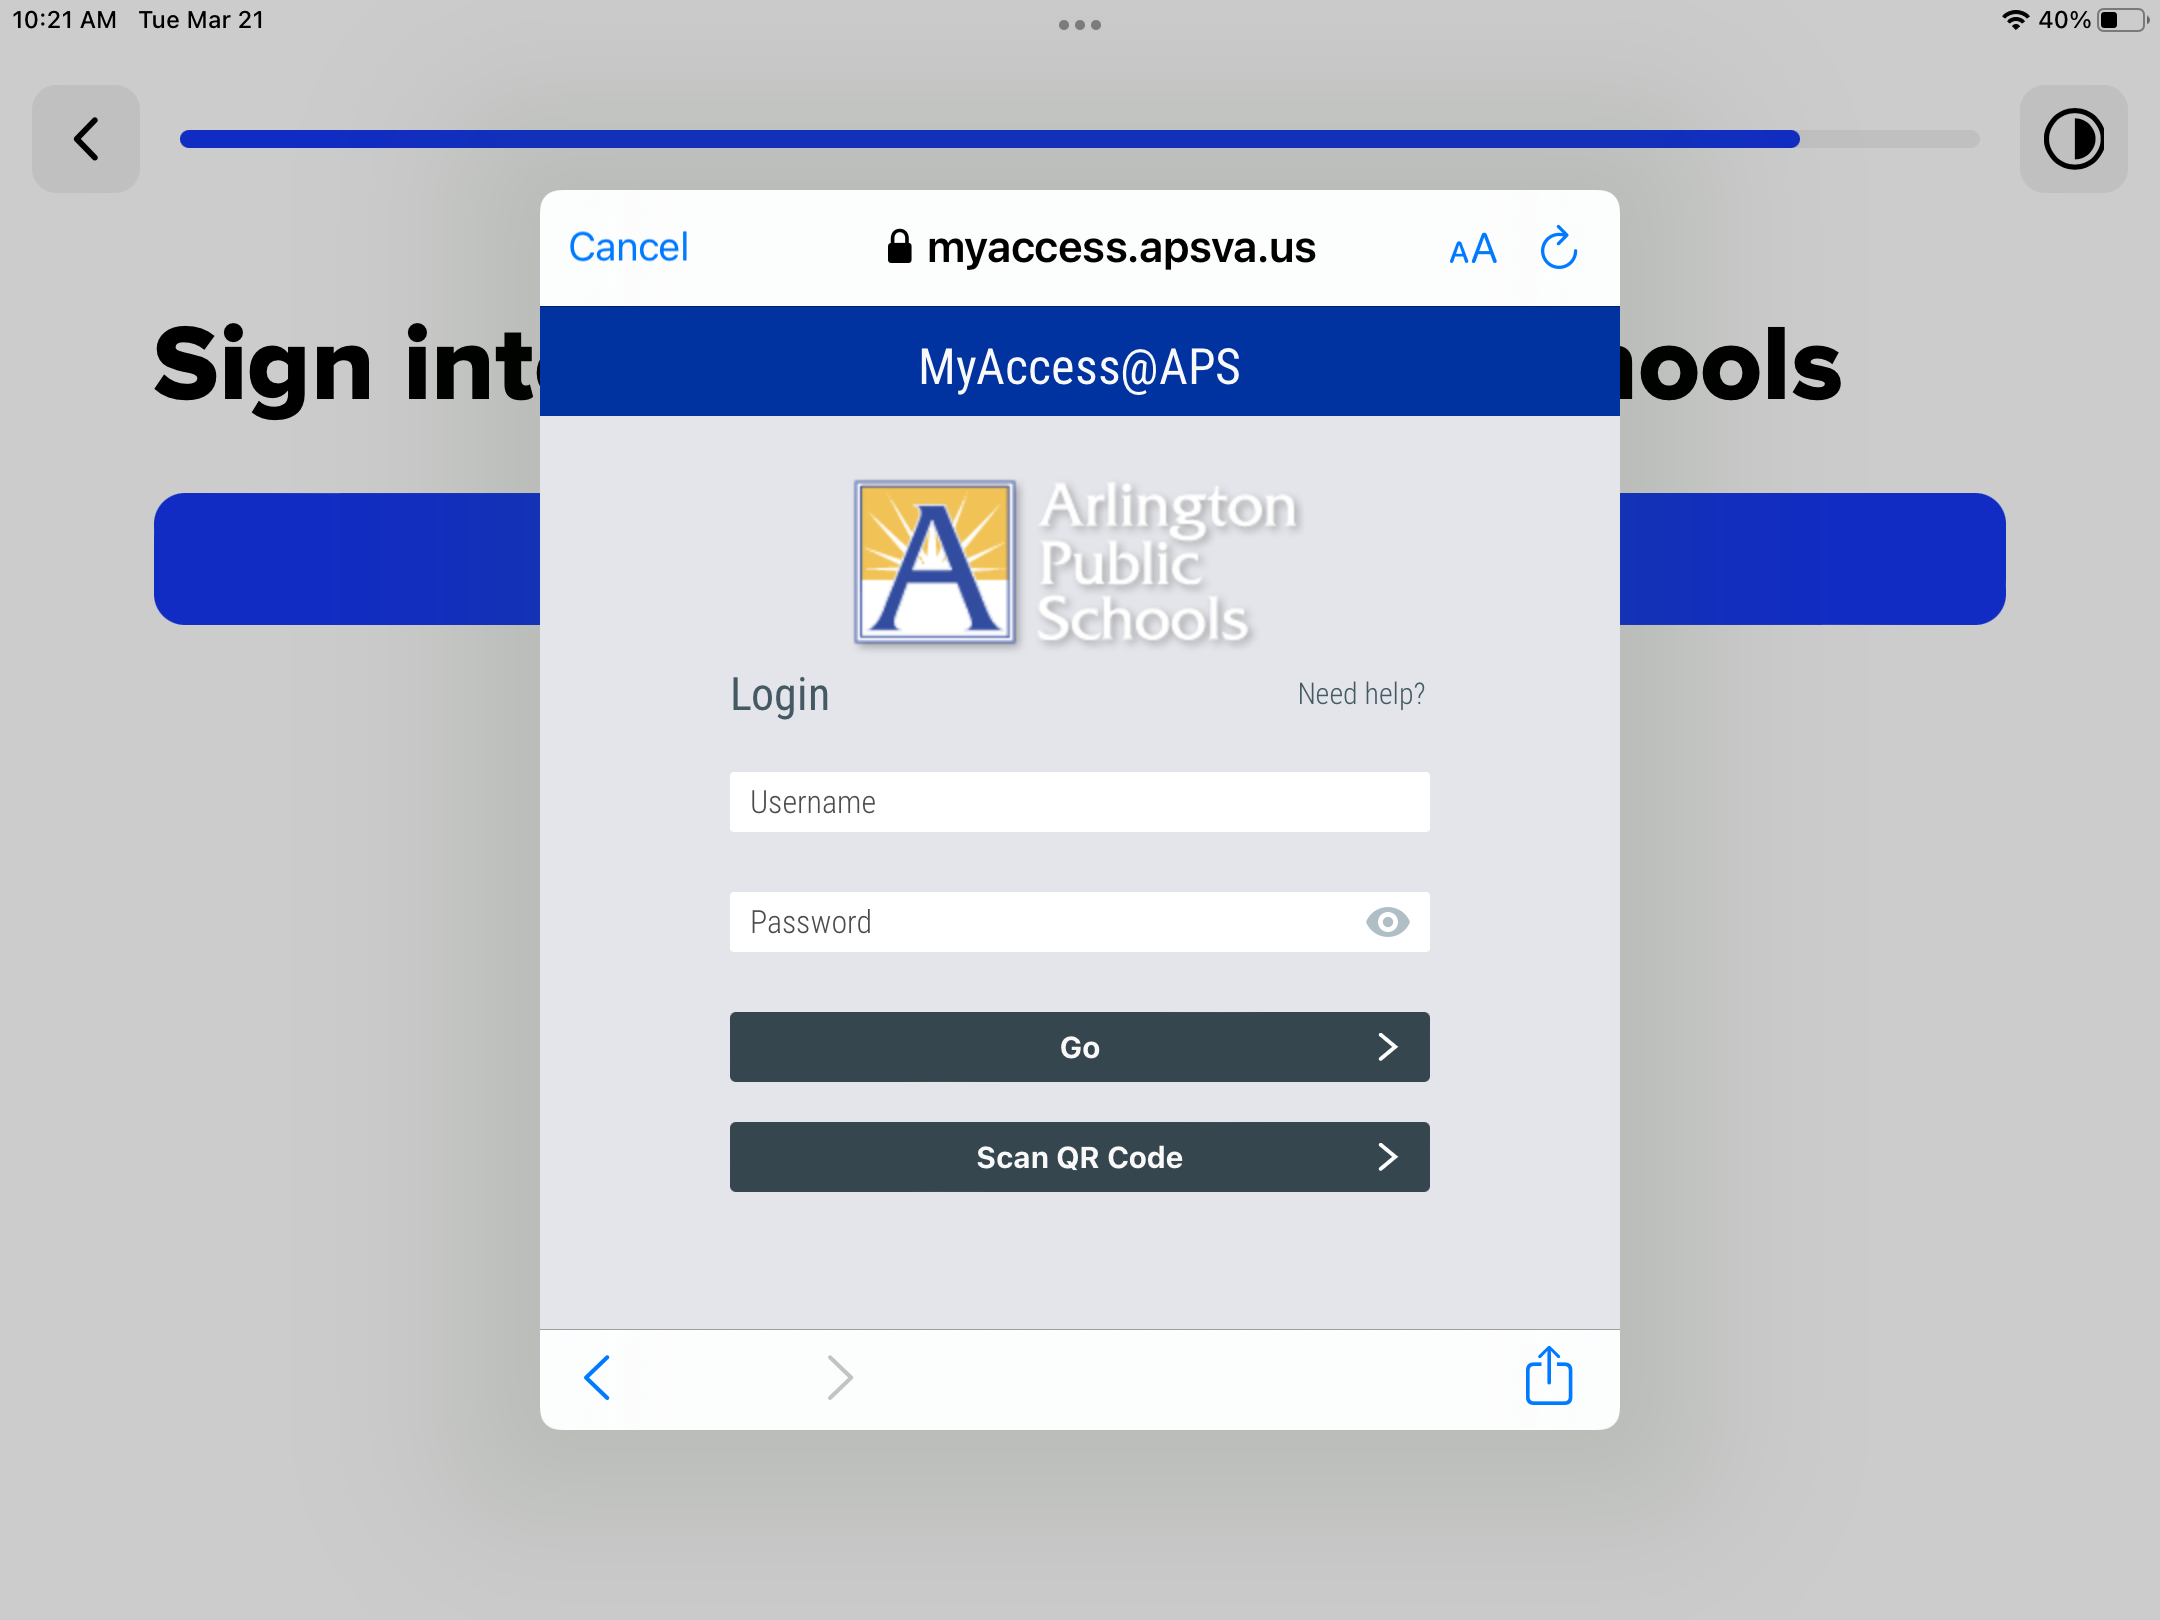 Arlington Public Schools MyAccess login page